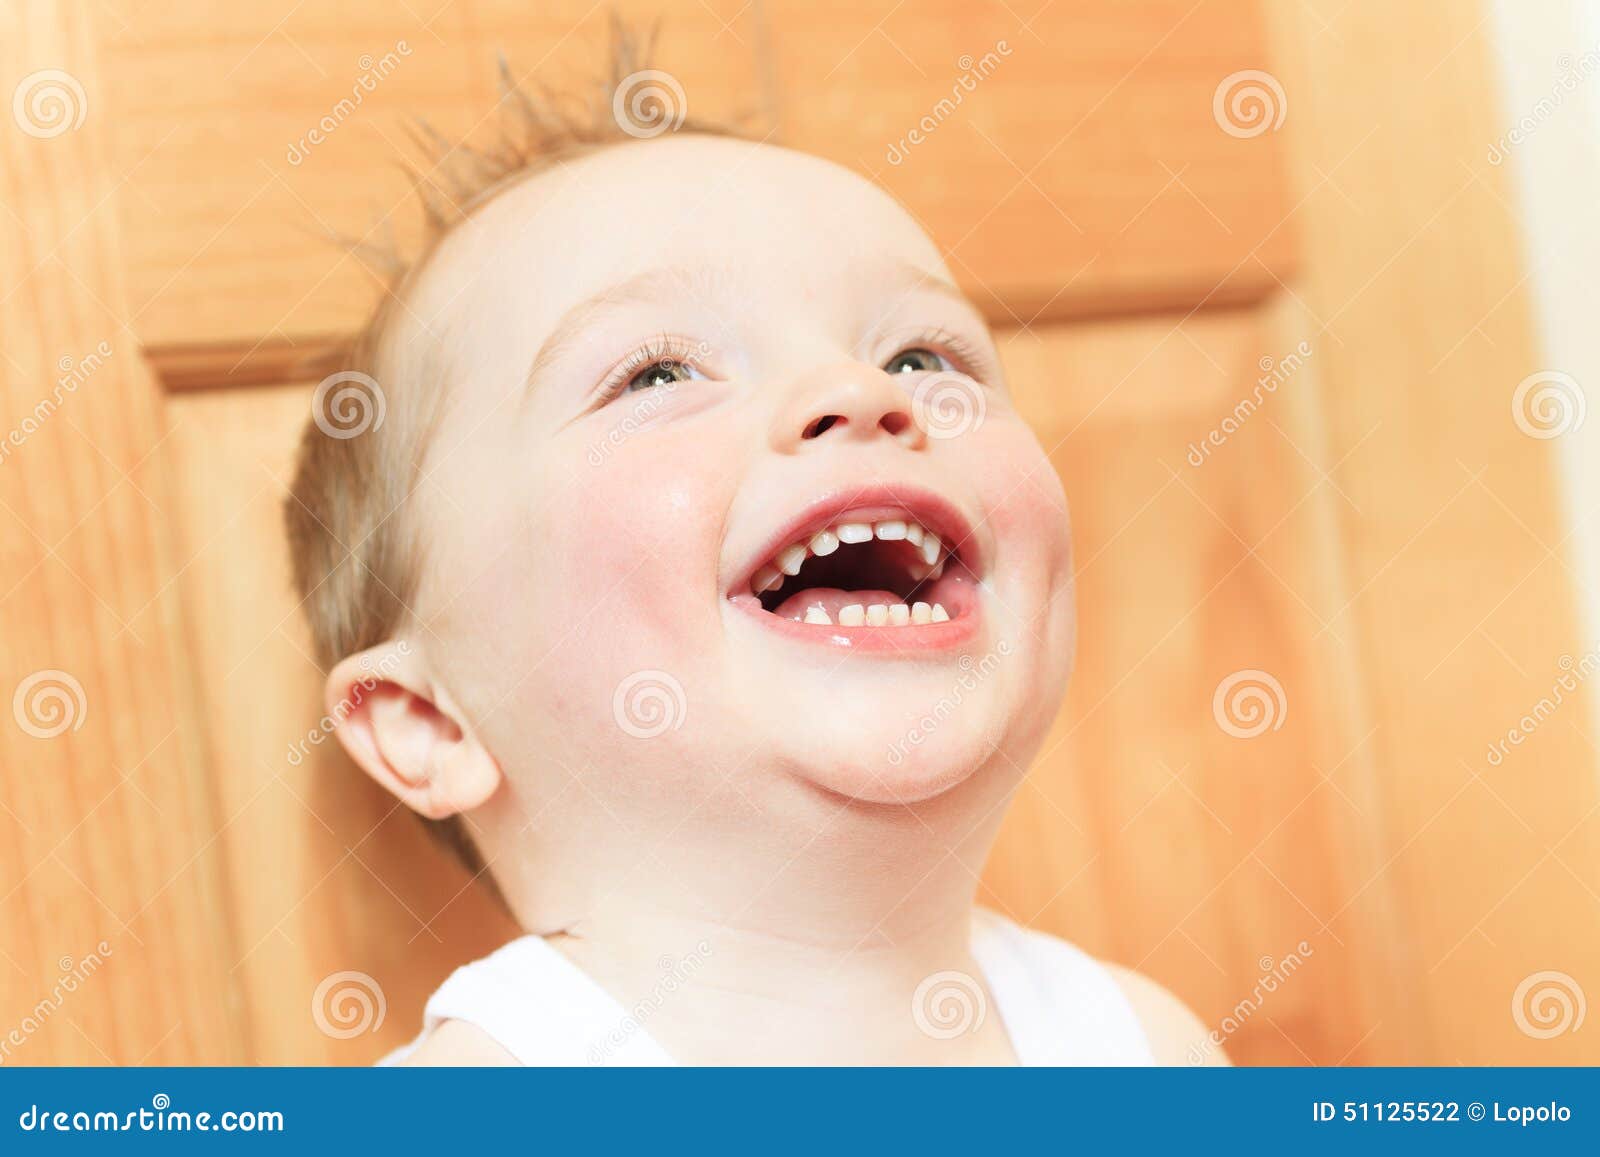 少许笑的男孩 库存图片. 图片 包括有 快乐, 咧嘴, 人员, 男朋友, 微笑, 幸福, 英俊, 笑声, 愉快 - 5747005